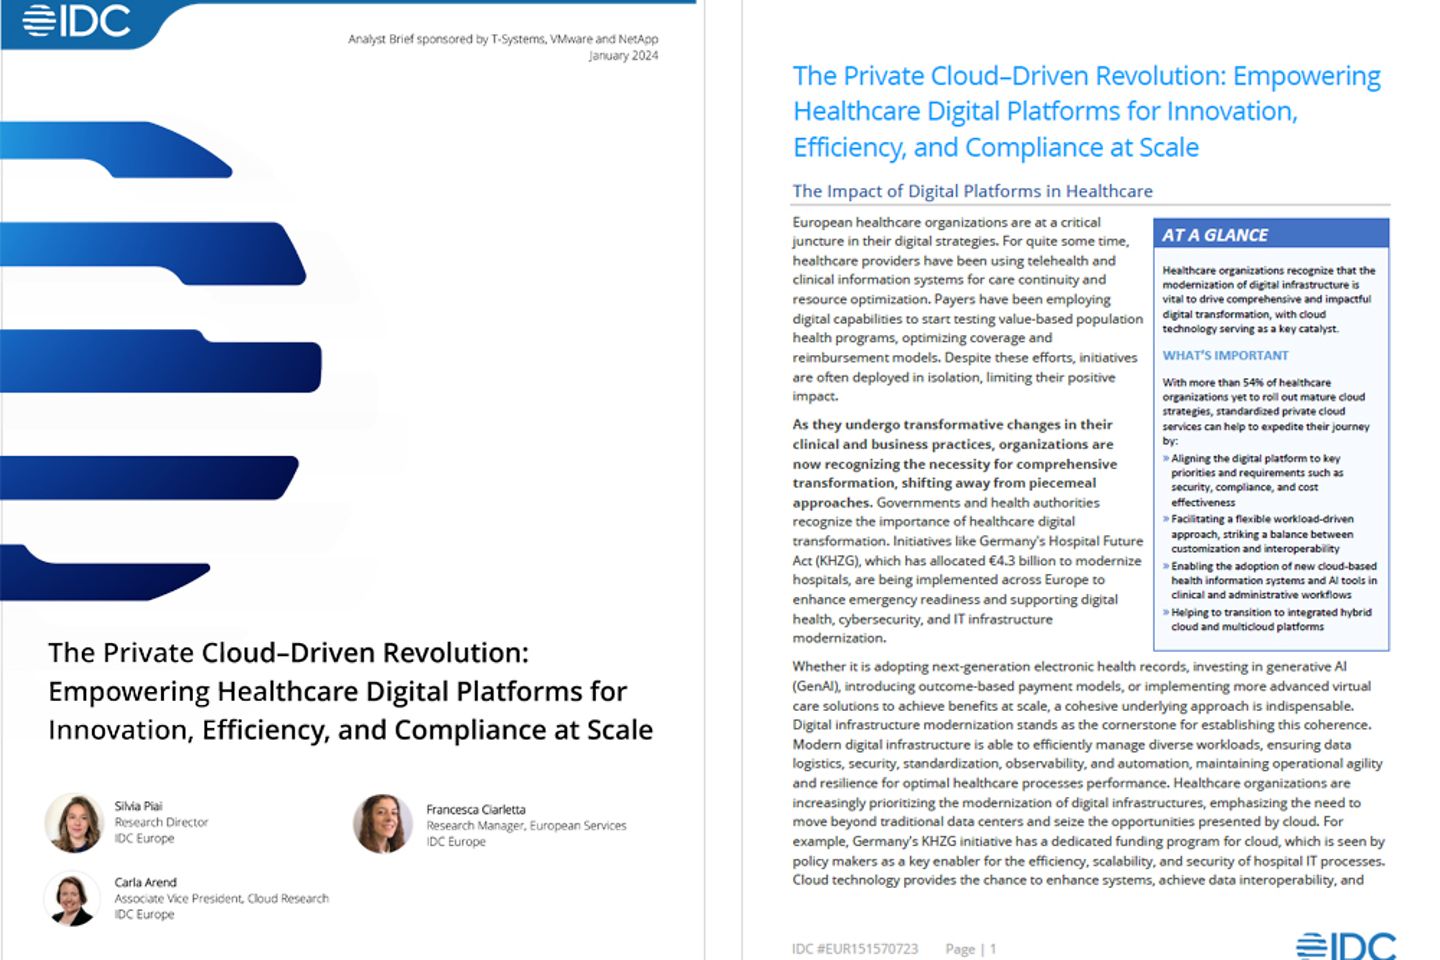 Portada y siguiente página del informe de IDC como captura de pantalla: La revolución basada en el cloud privado 